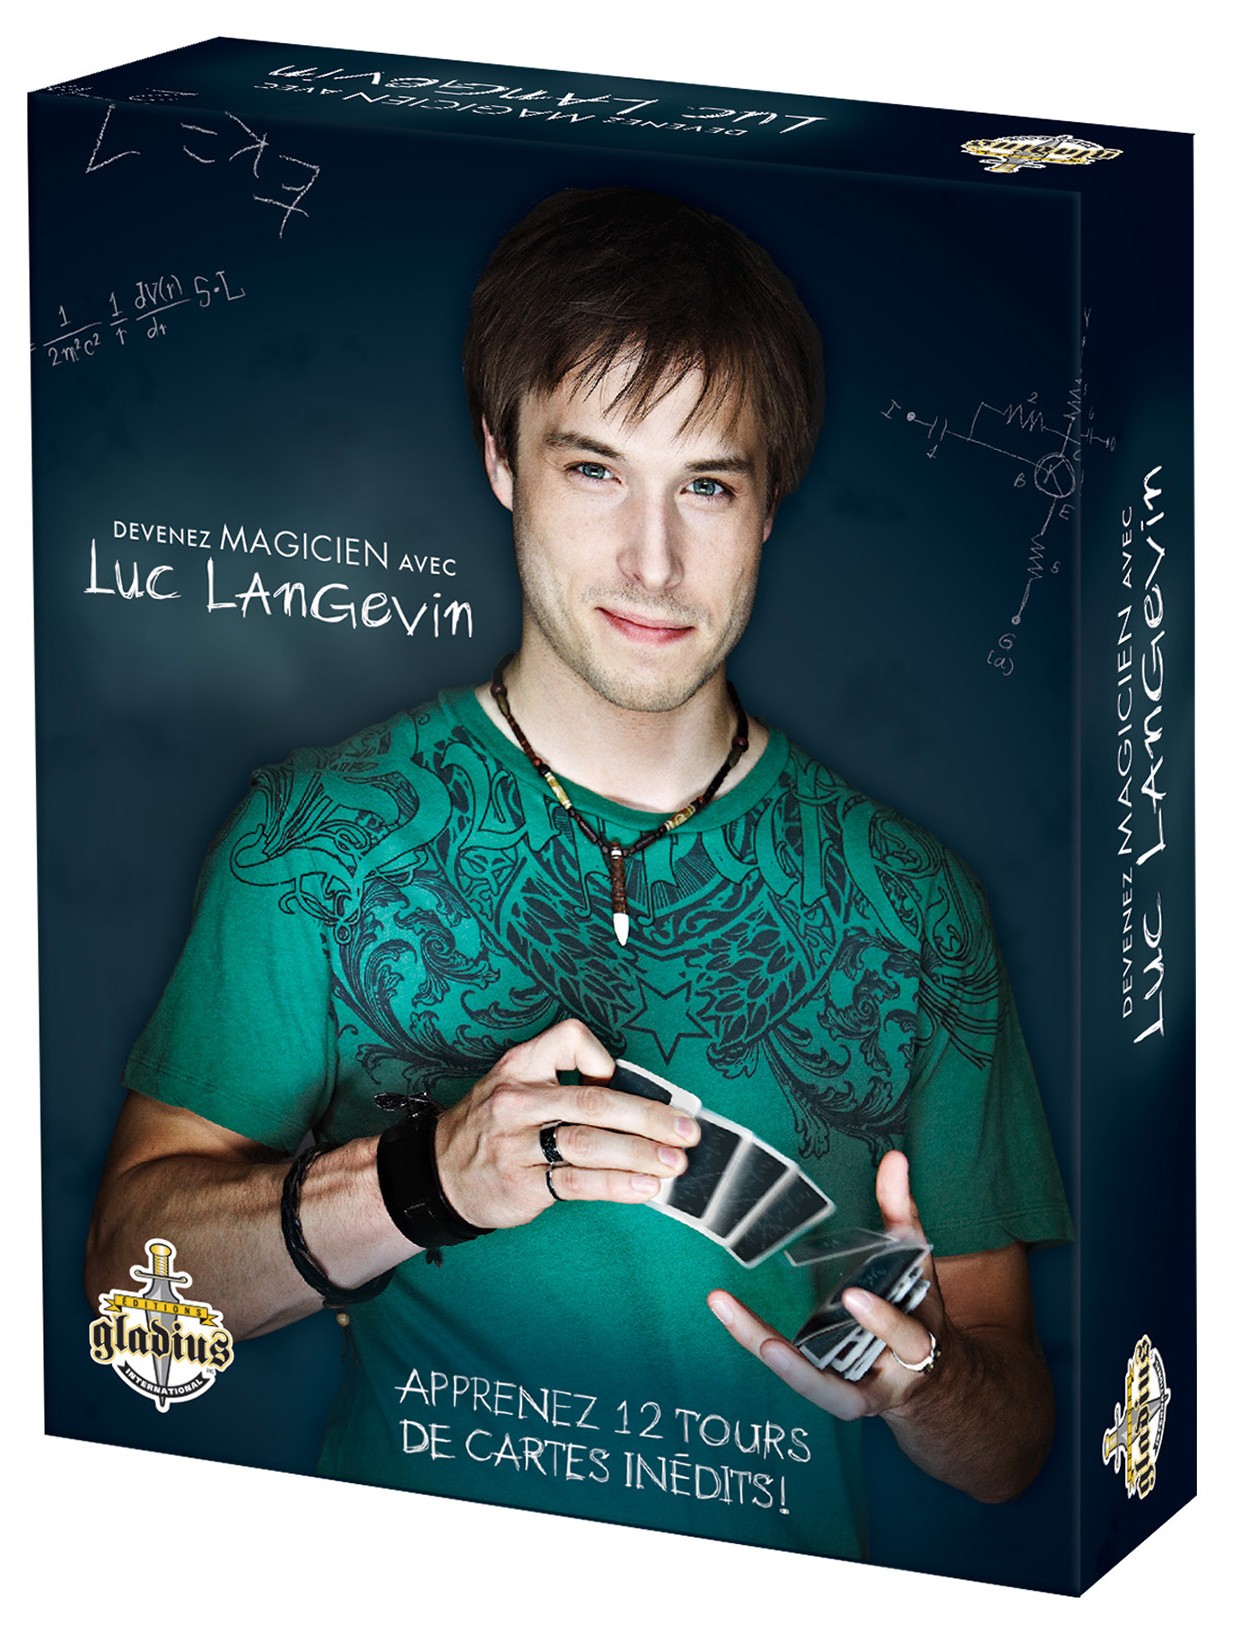 Boite du jeu Devenez Magicien avec Luc Langevin vol.1 offert chez LilloJEUX